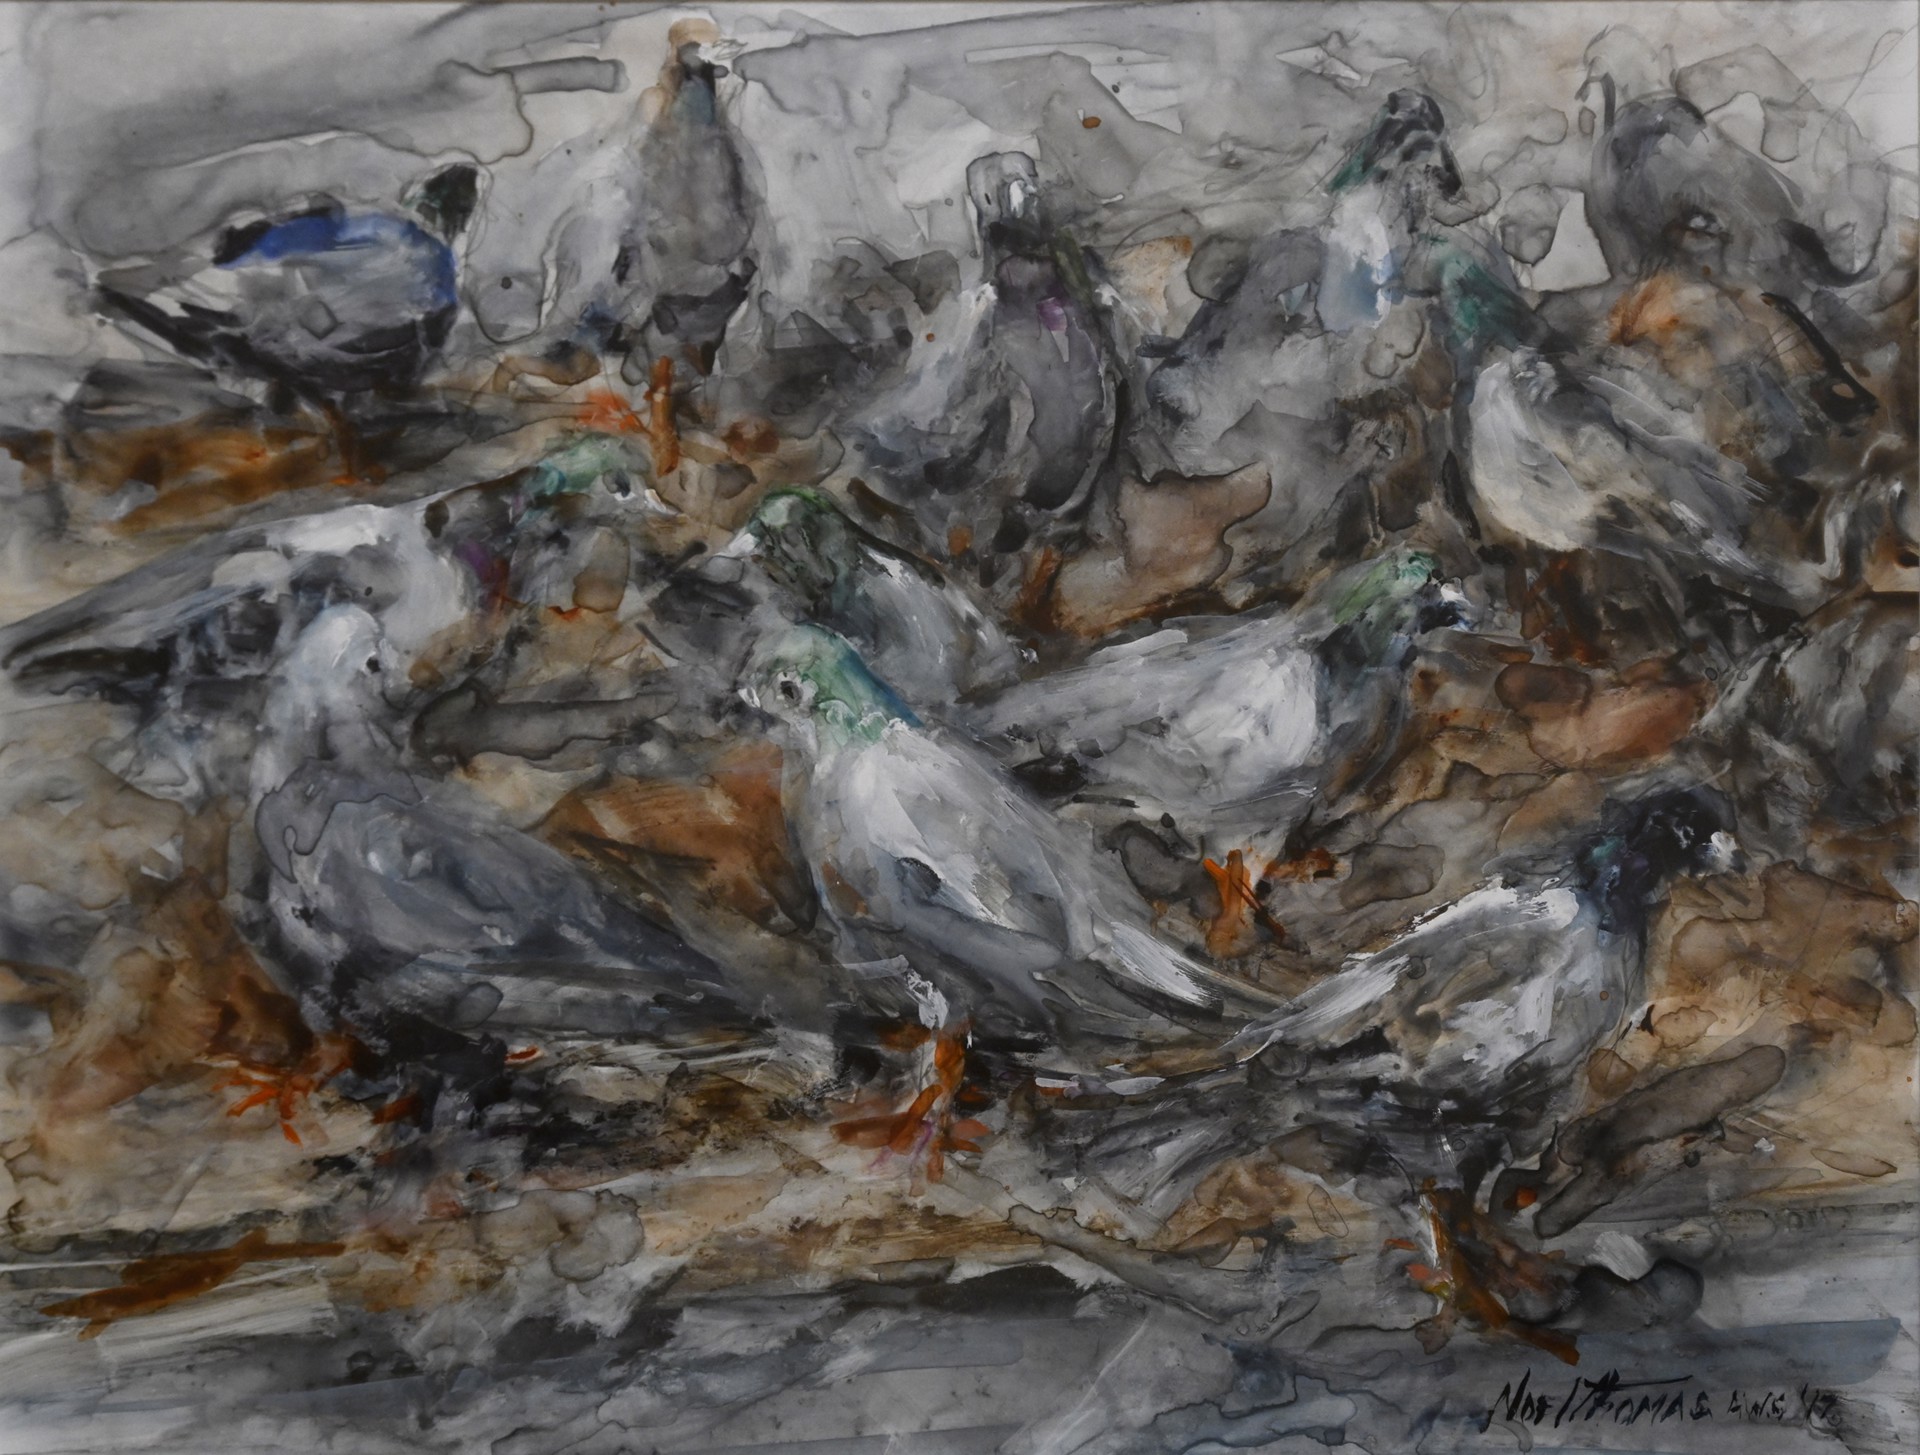 Pigeon Frenzy by Noel Thomas